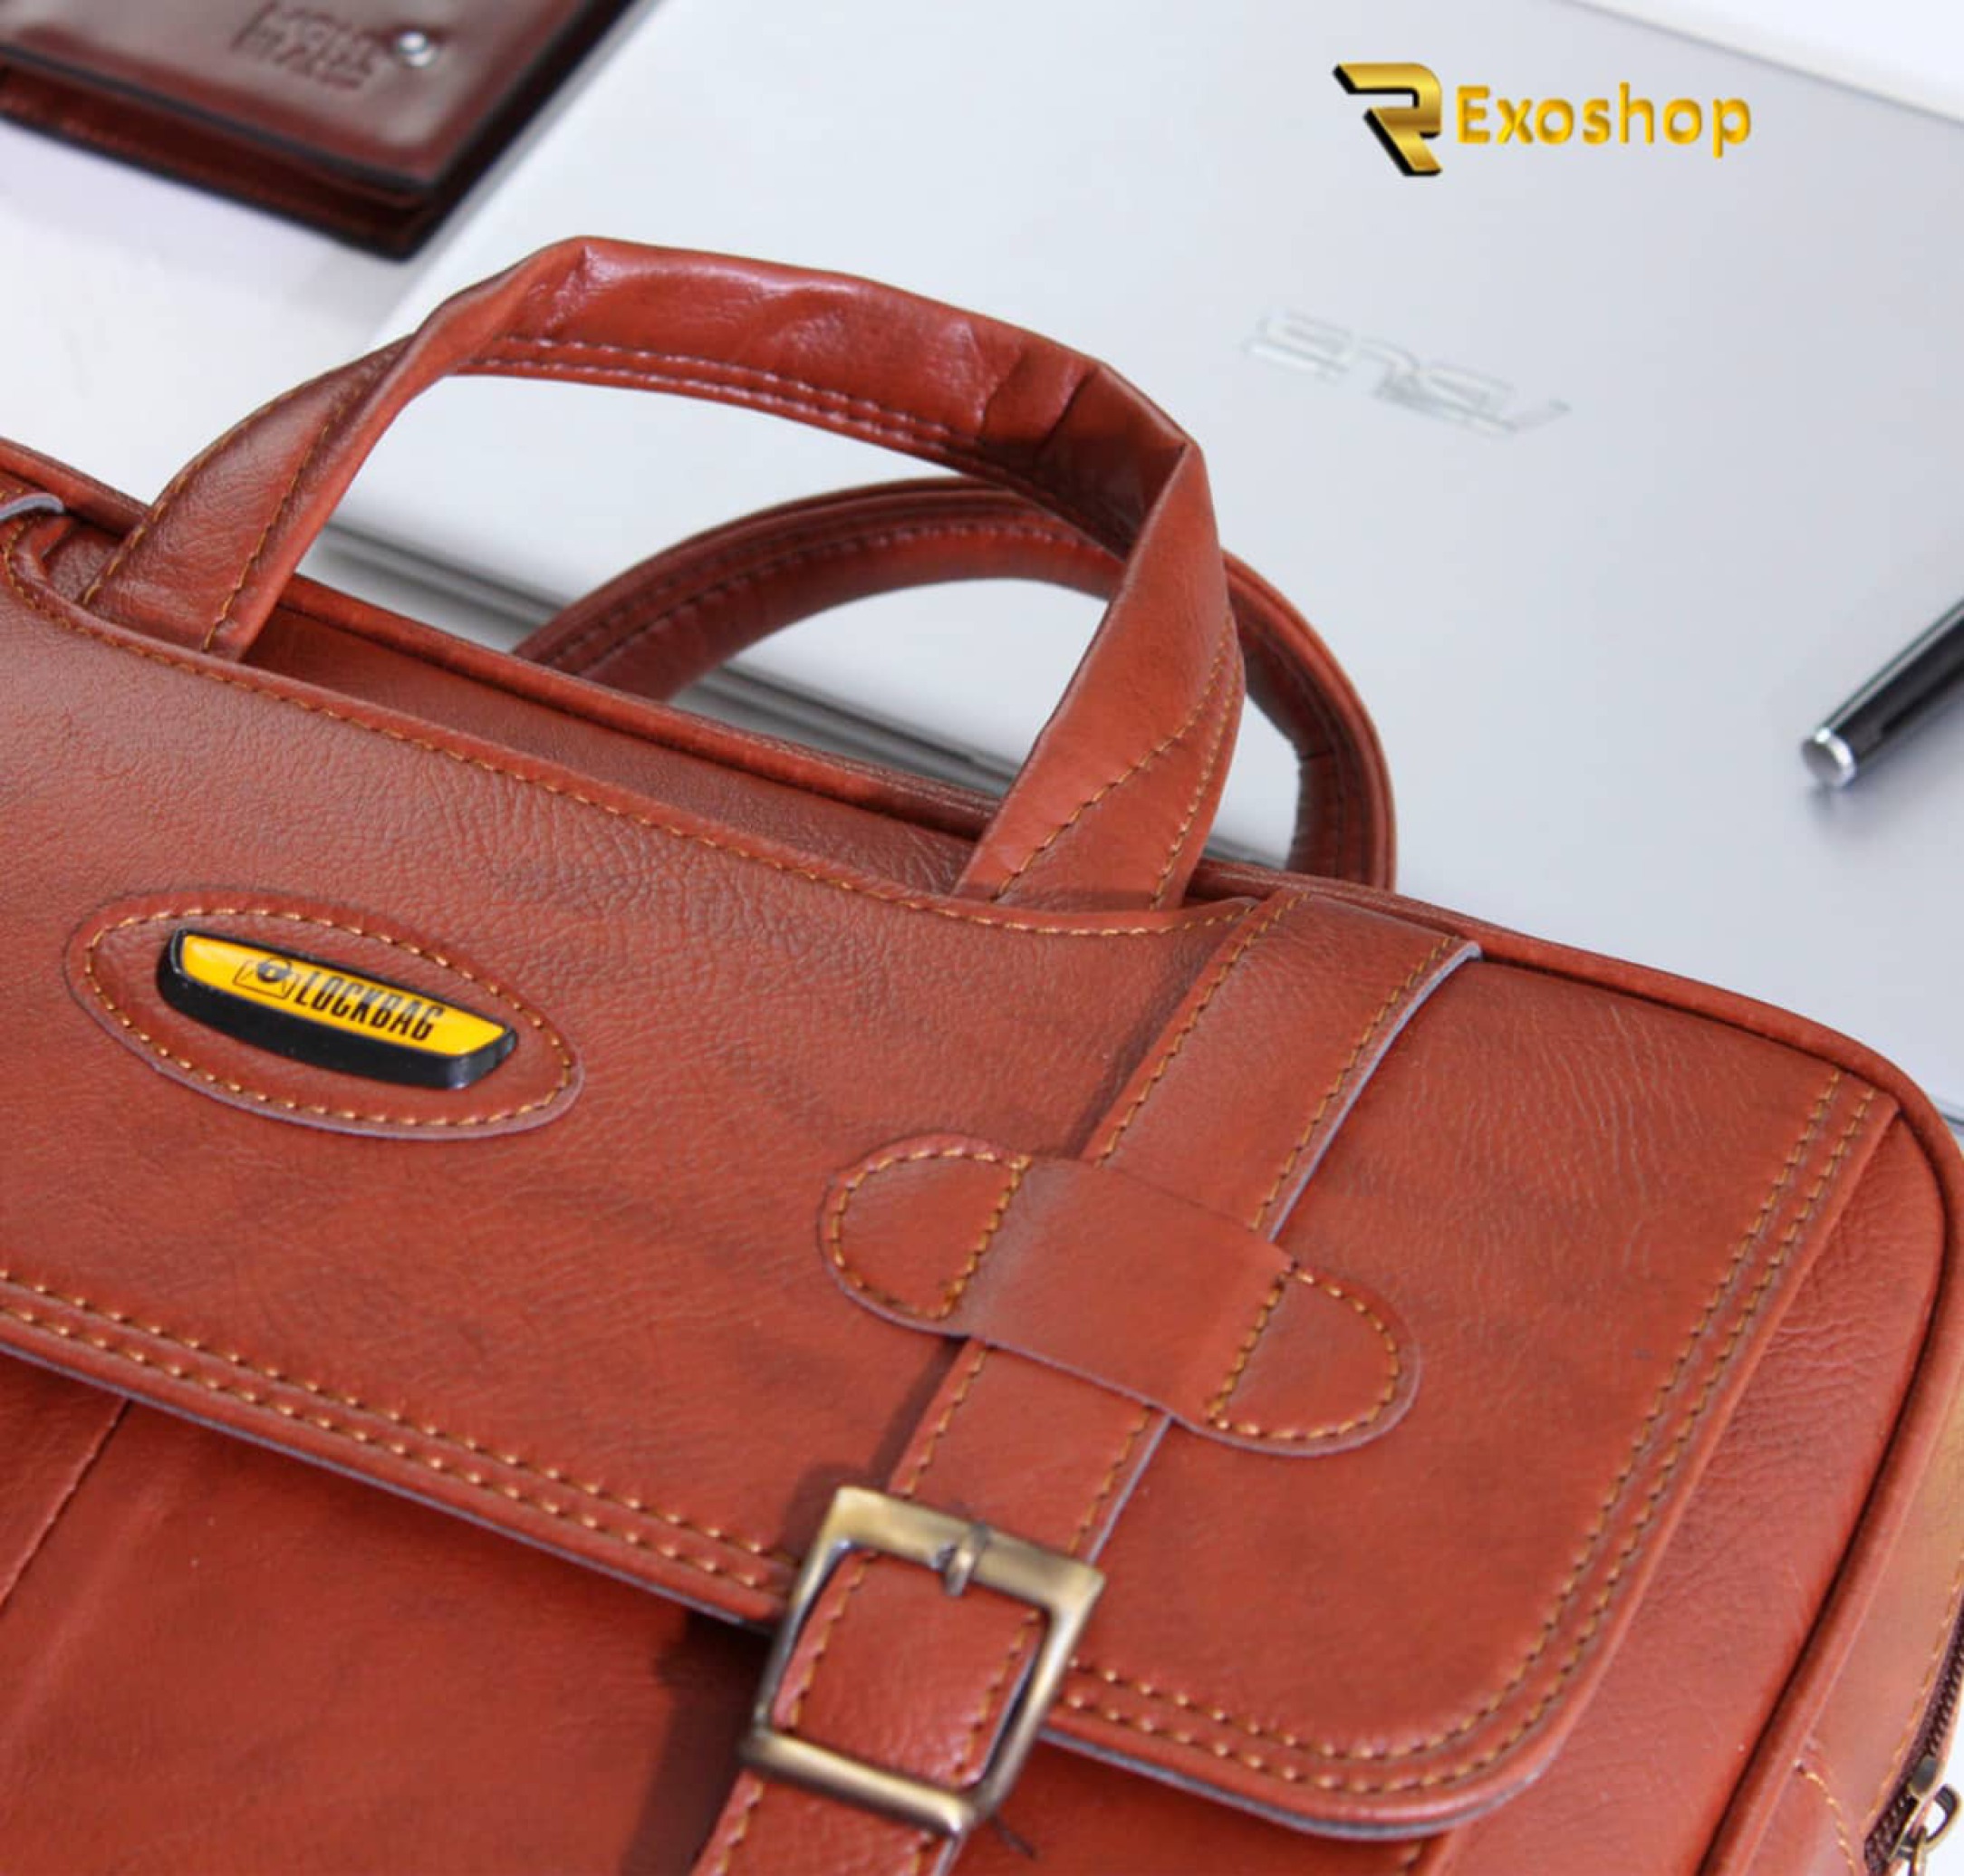  کیف اداری لاک بگ مدل 31155 یکی از بهترین کیف ها است که با بهترین کیفیت و با قیمتی ارزان در رکسوشاپ موجود است 